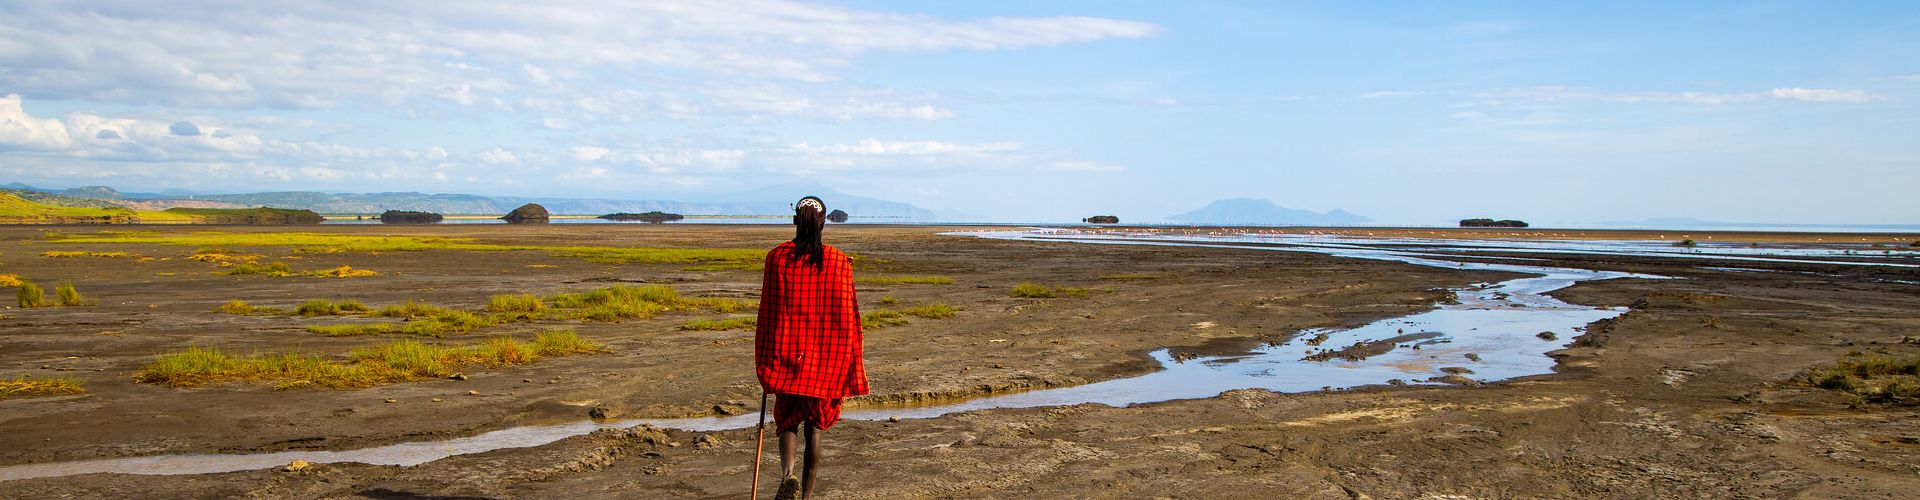 Découvrez la culture traditionnelle des Maasai dans la région du lac Natron grâce à nos safaris en Tanzanie